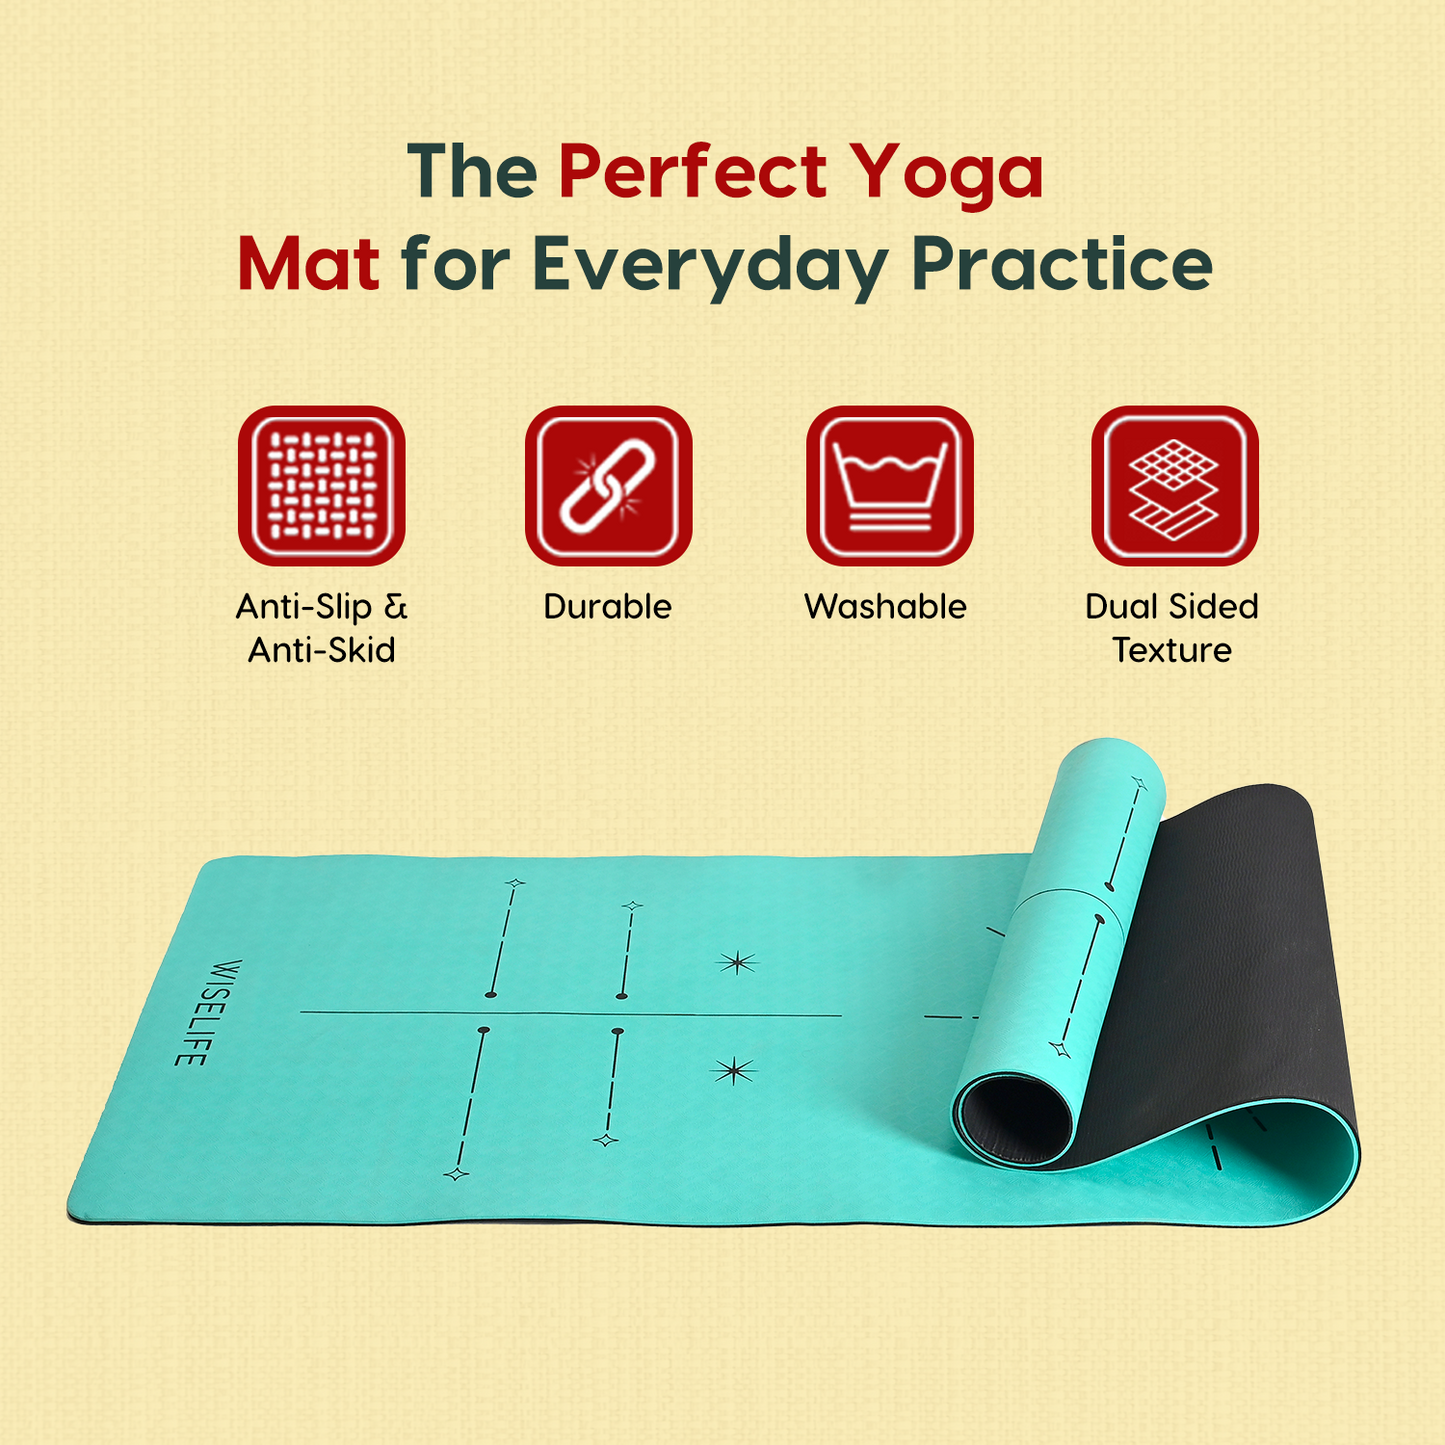 Dual Layer Alignment Yoga Mat